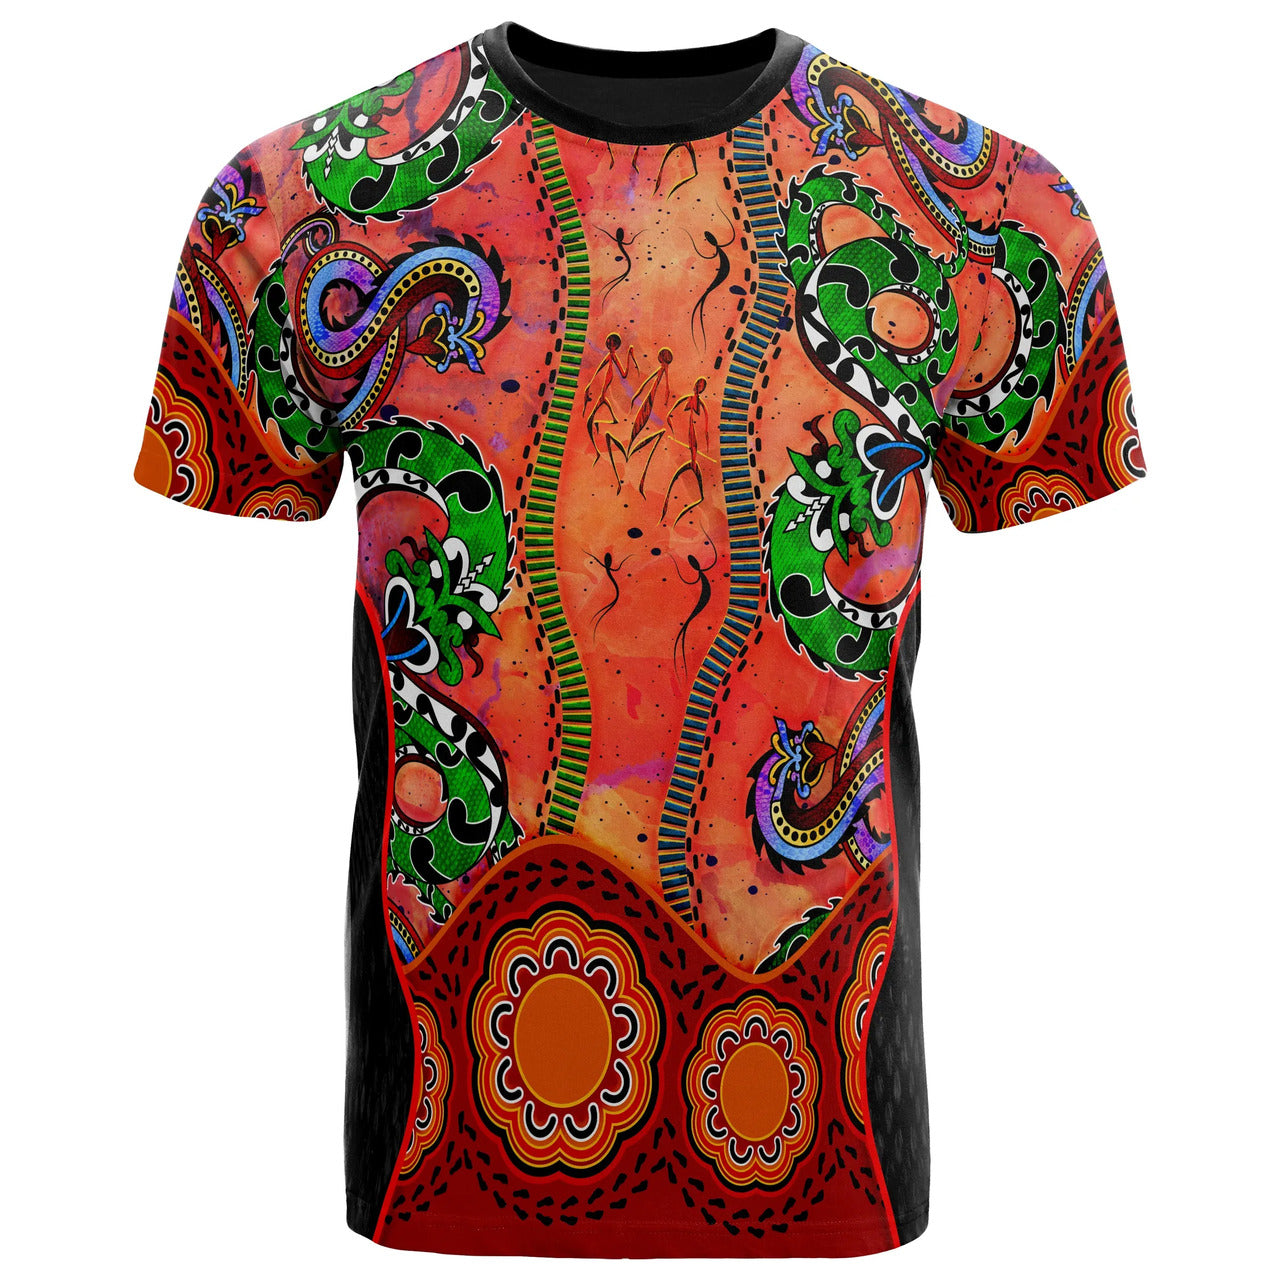 Australia Aboriginal T-Shirt Aussie Indigenous Patterns Orange - Meteew